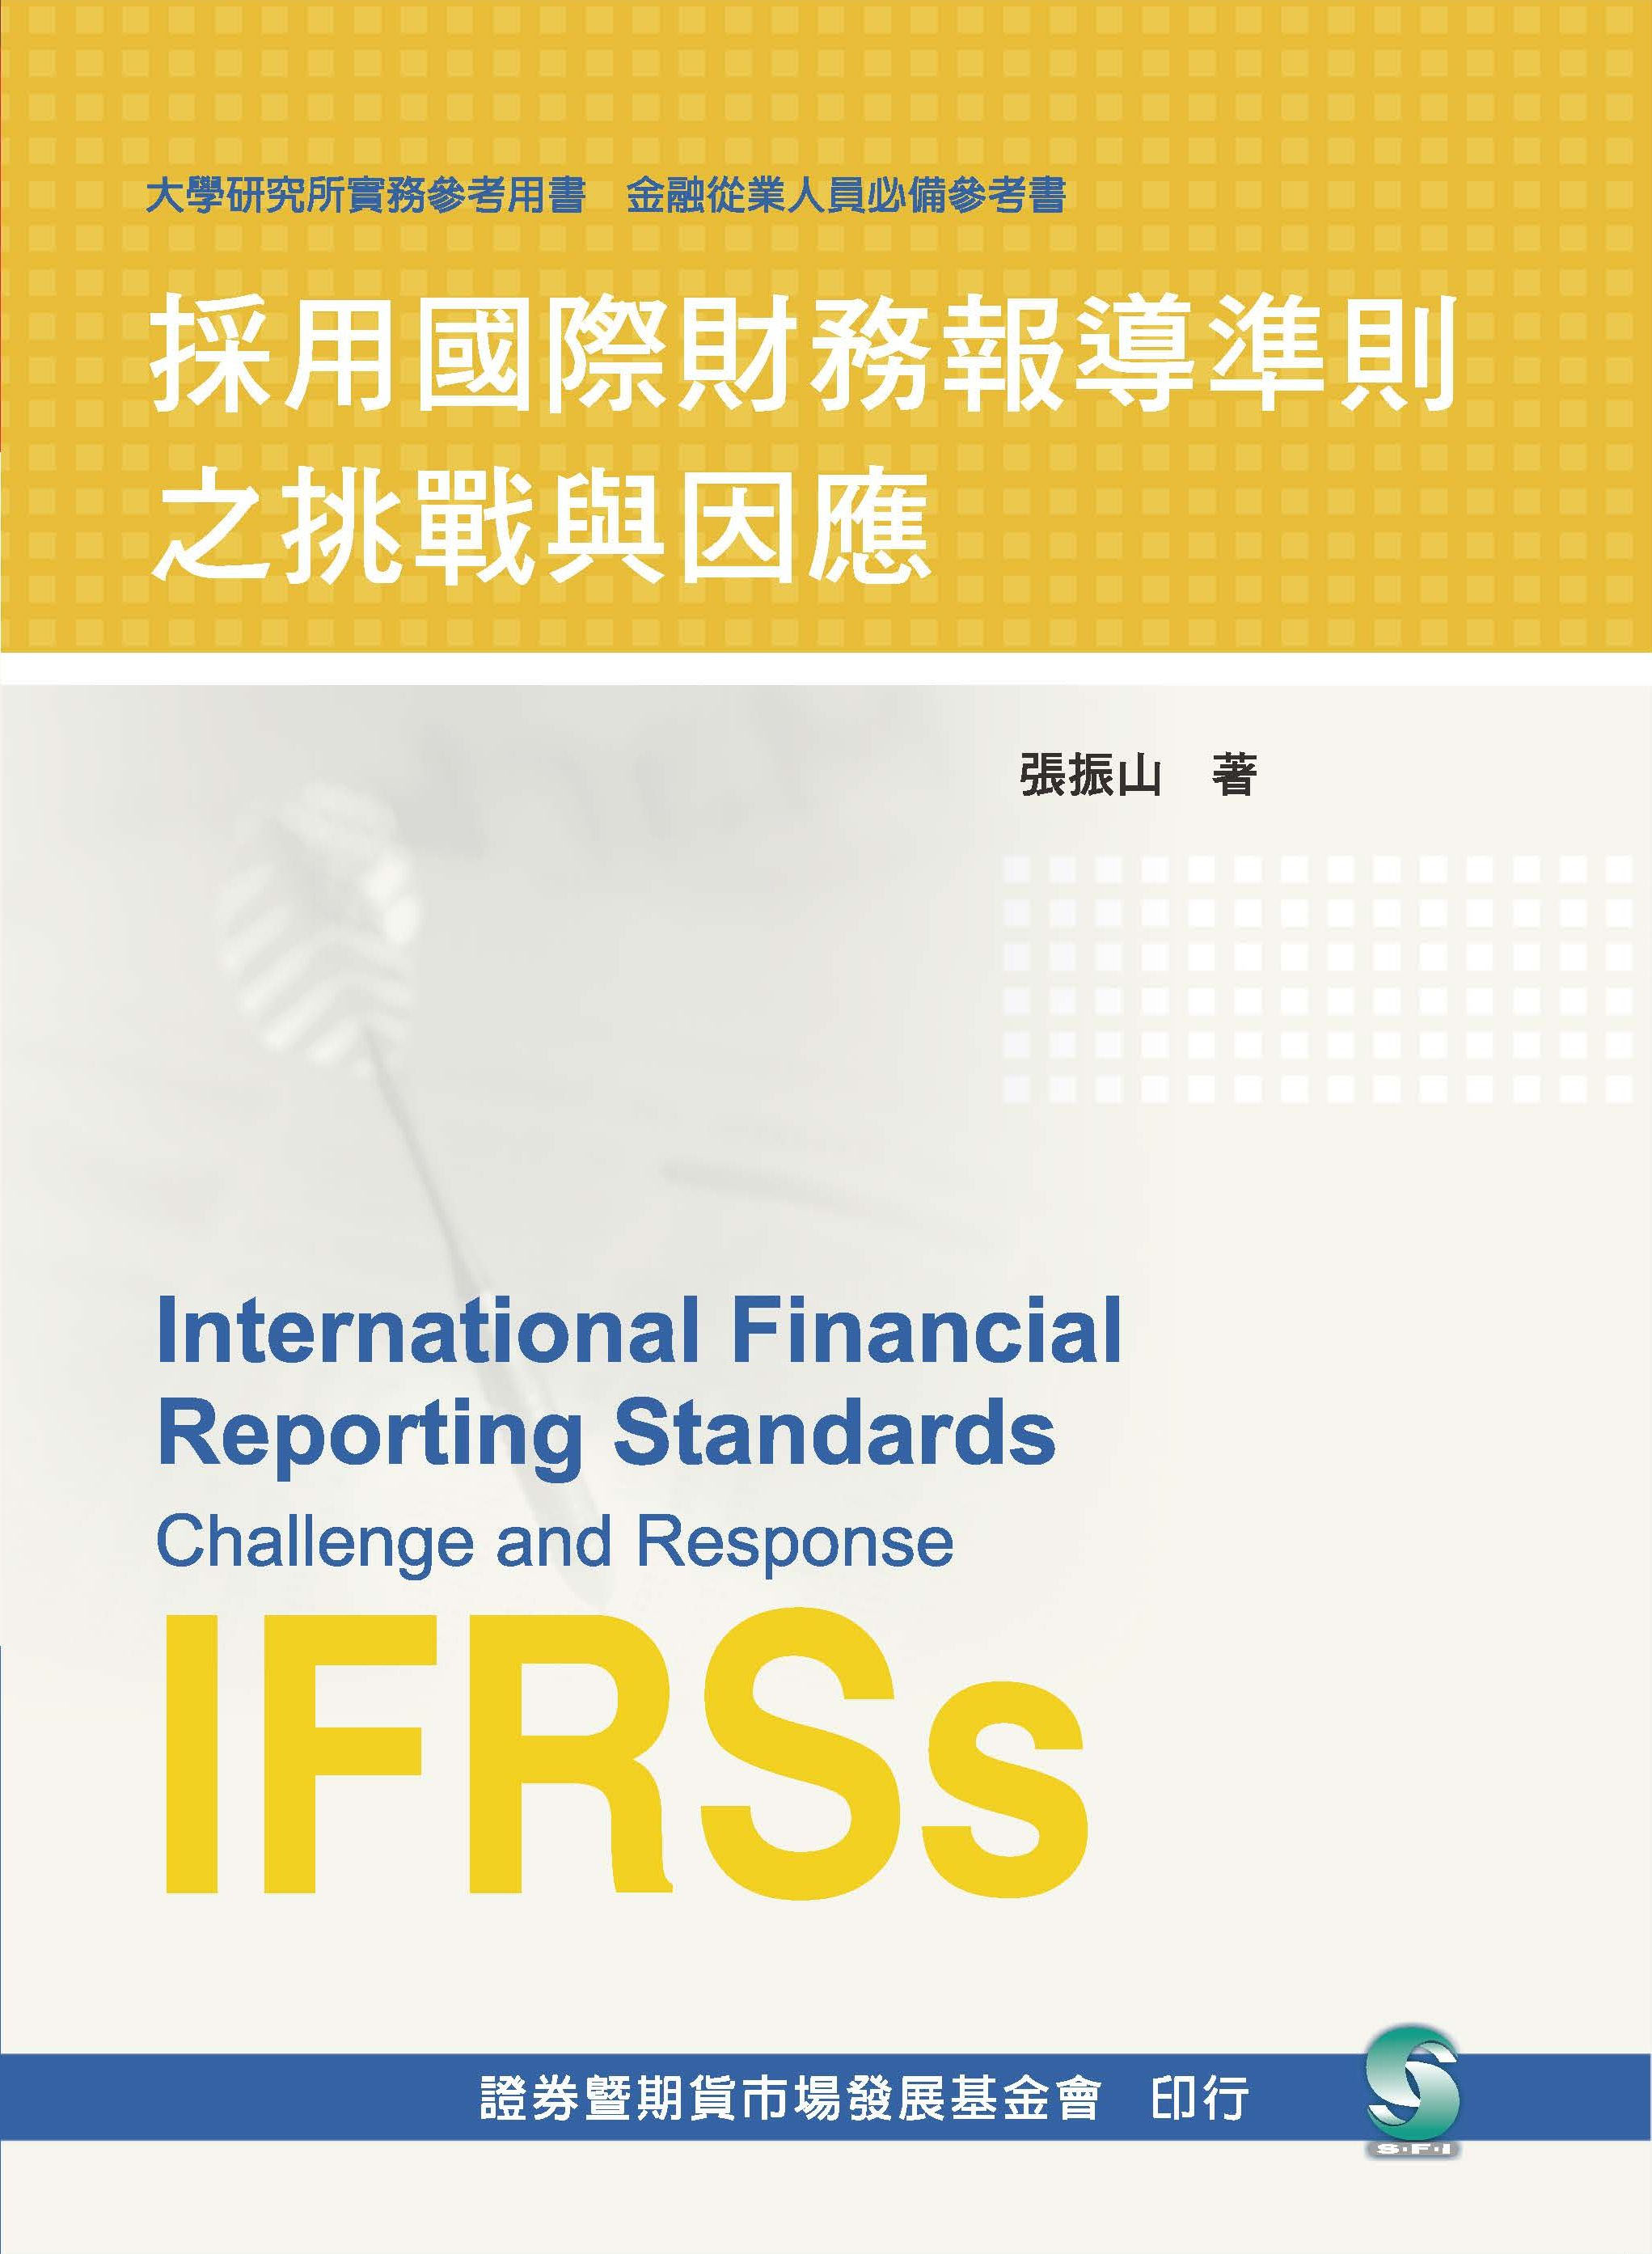 採用國際財務報導準則之挑戰與因應